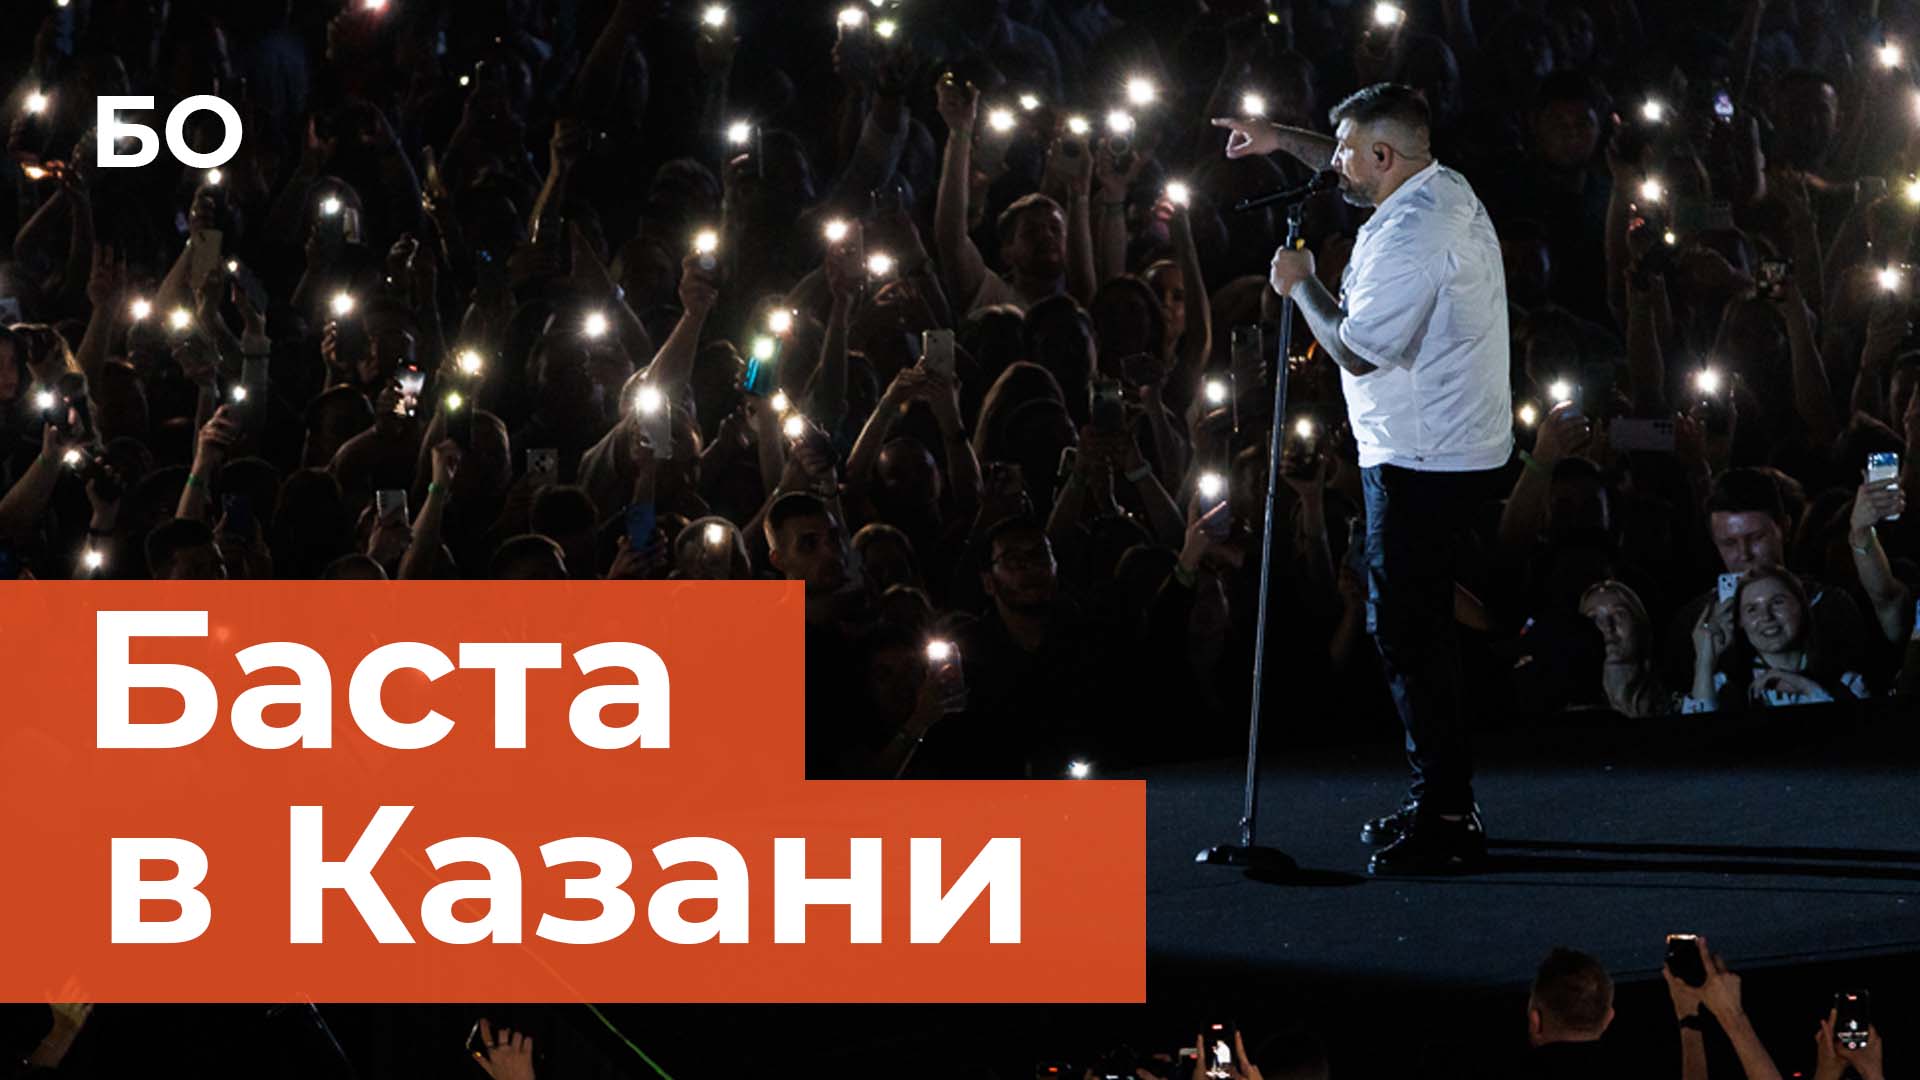 Как прошел первый стадионный концерт Басты в Казани?